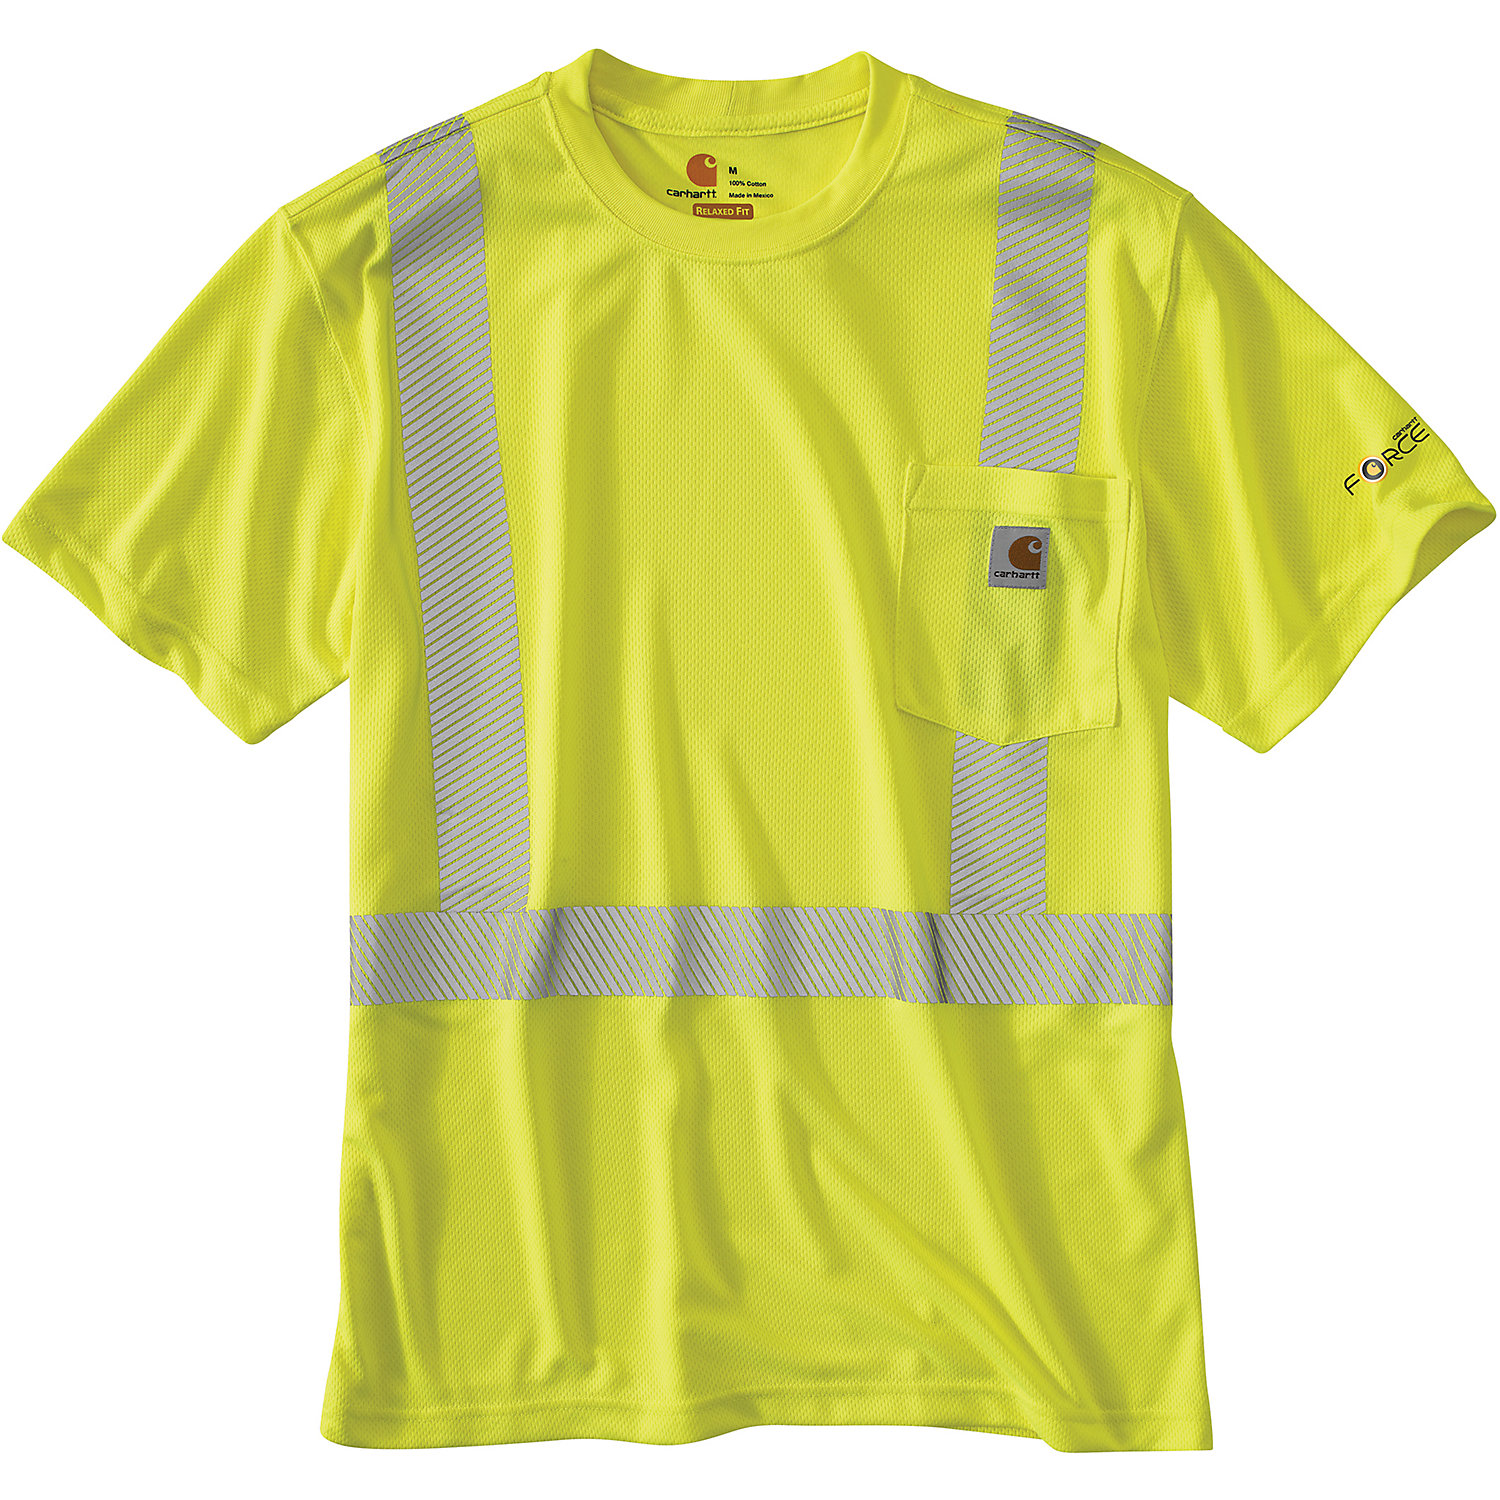 Carhartt Mens High-Visibility Force SS Class 2 T-Shirt